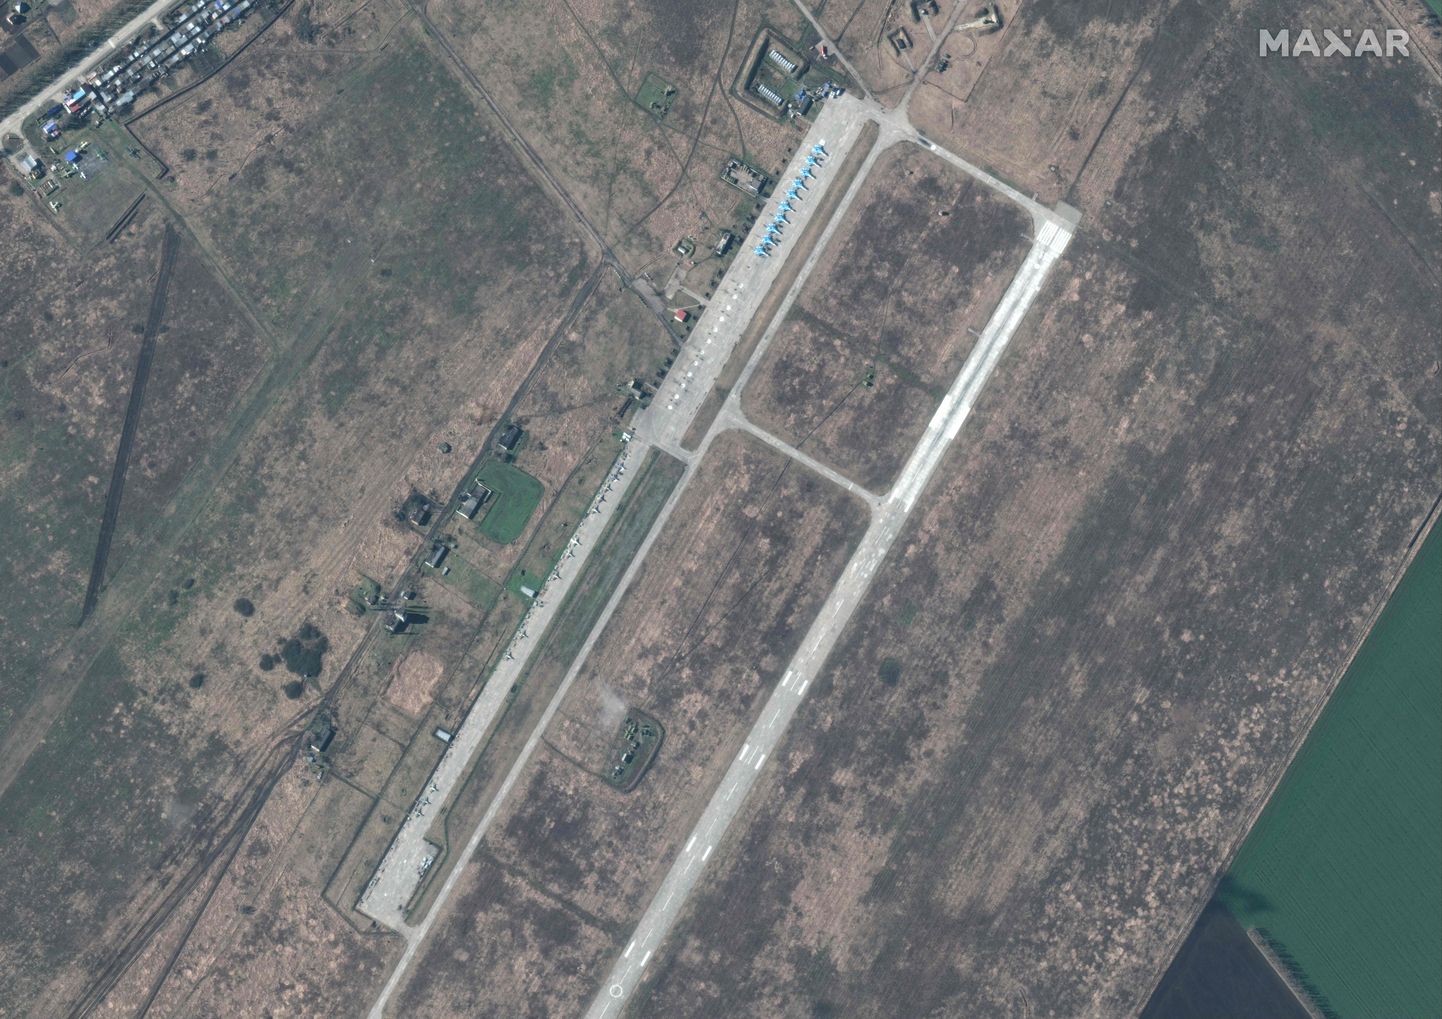 USA ettevõtte Maxar Technologies sateliidifoto Venemaa lennukitest Krasnodari krais Primorsko Ahtarski õhujõudude baasis. Foto on tehtud vahetult enne Venemaa vallutussõja algust Ukrainas